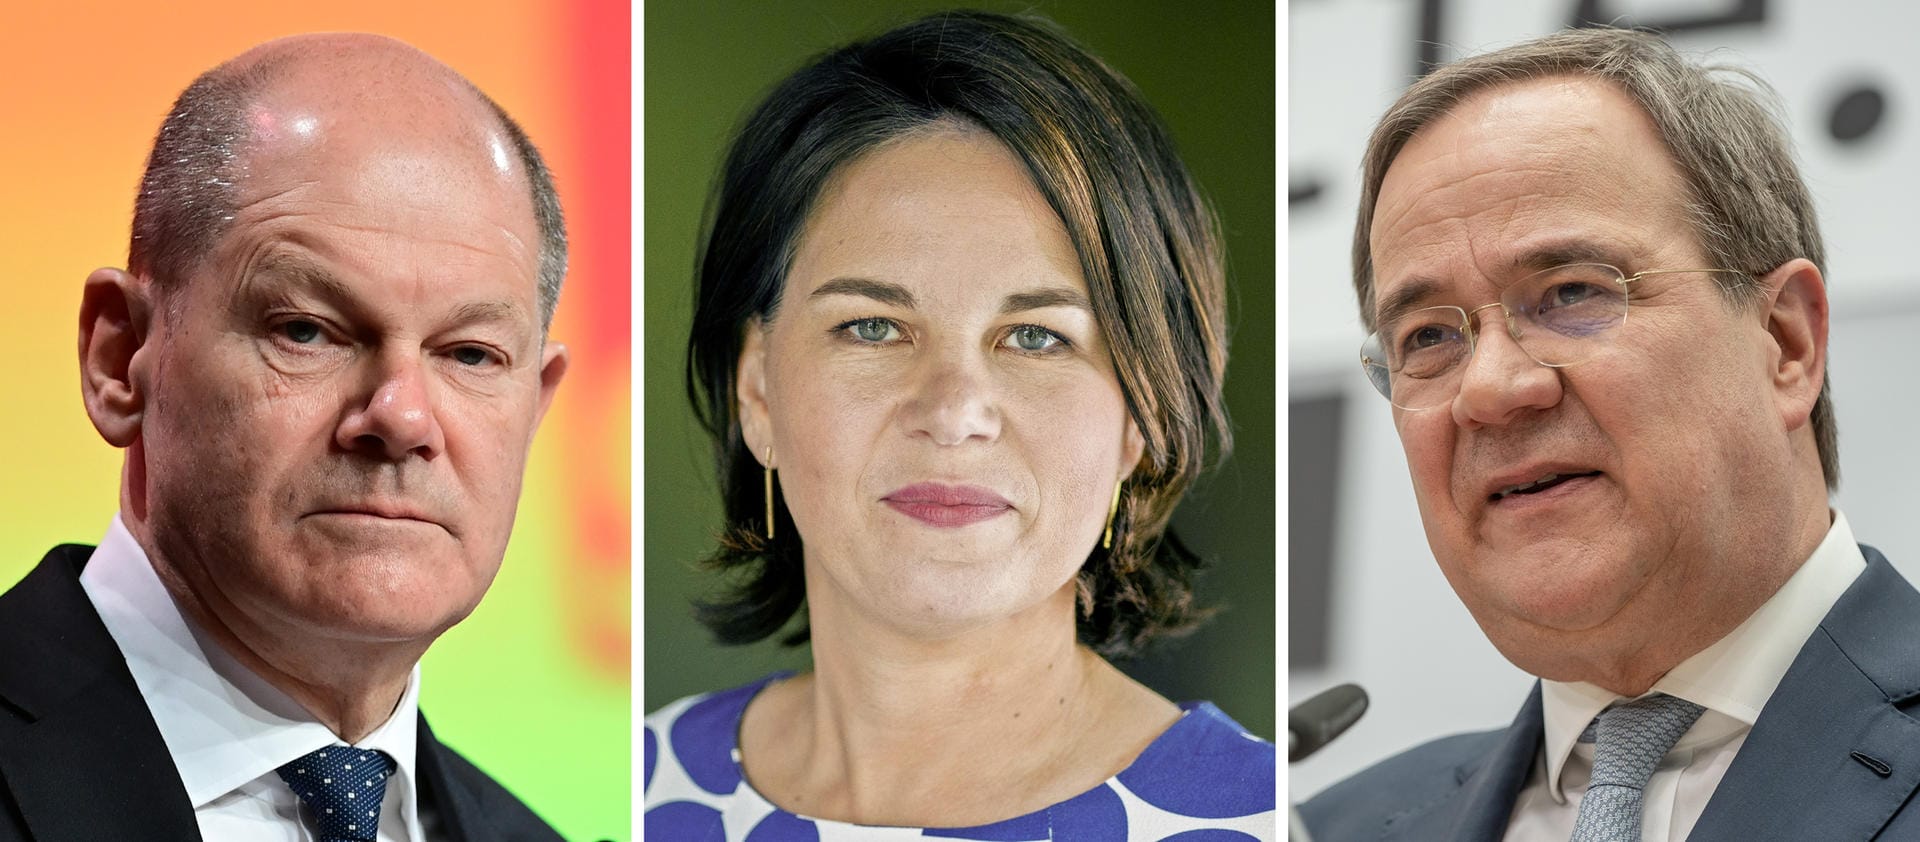 Diese Gesichter sind bekannt. Doch wer steht an der Seite der Kanzlerkandidaten? Es sind Susanne Laschet, Britta Ernst und Daniel Holefleisch.